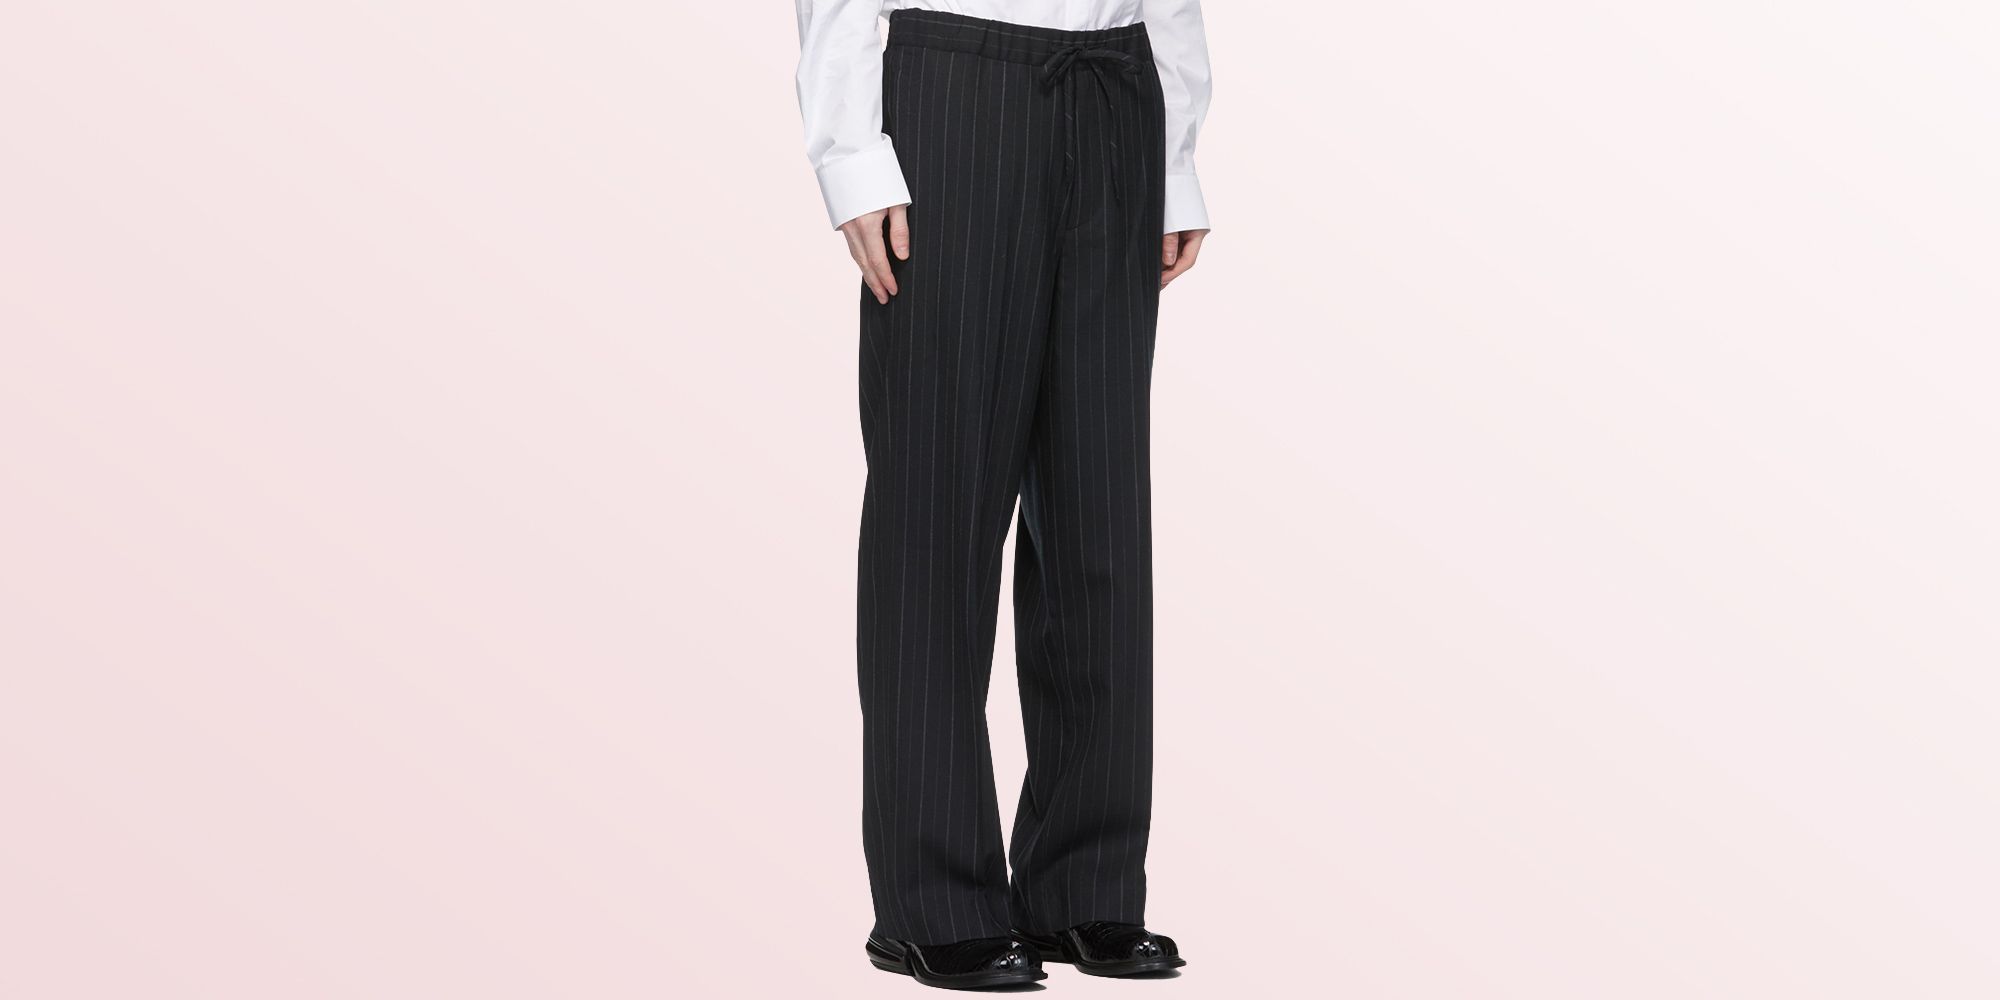 Best Merino Wool Pants For Men | Merino Wool Gear